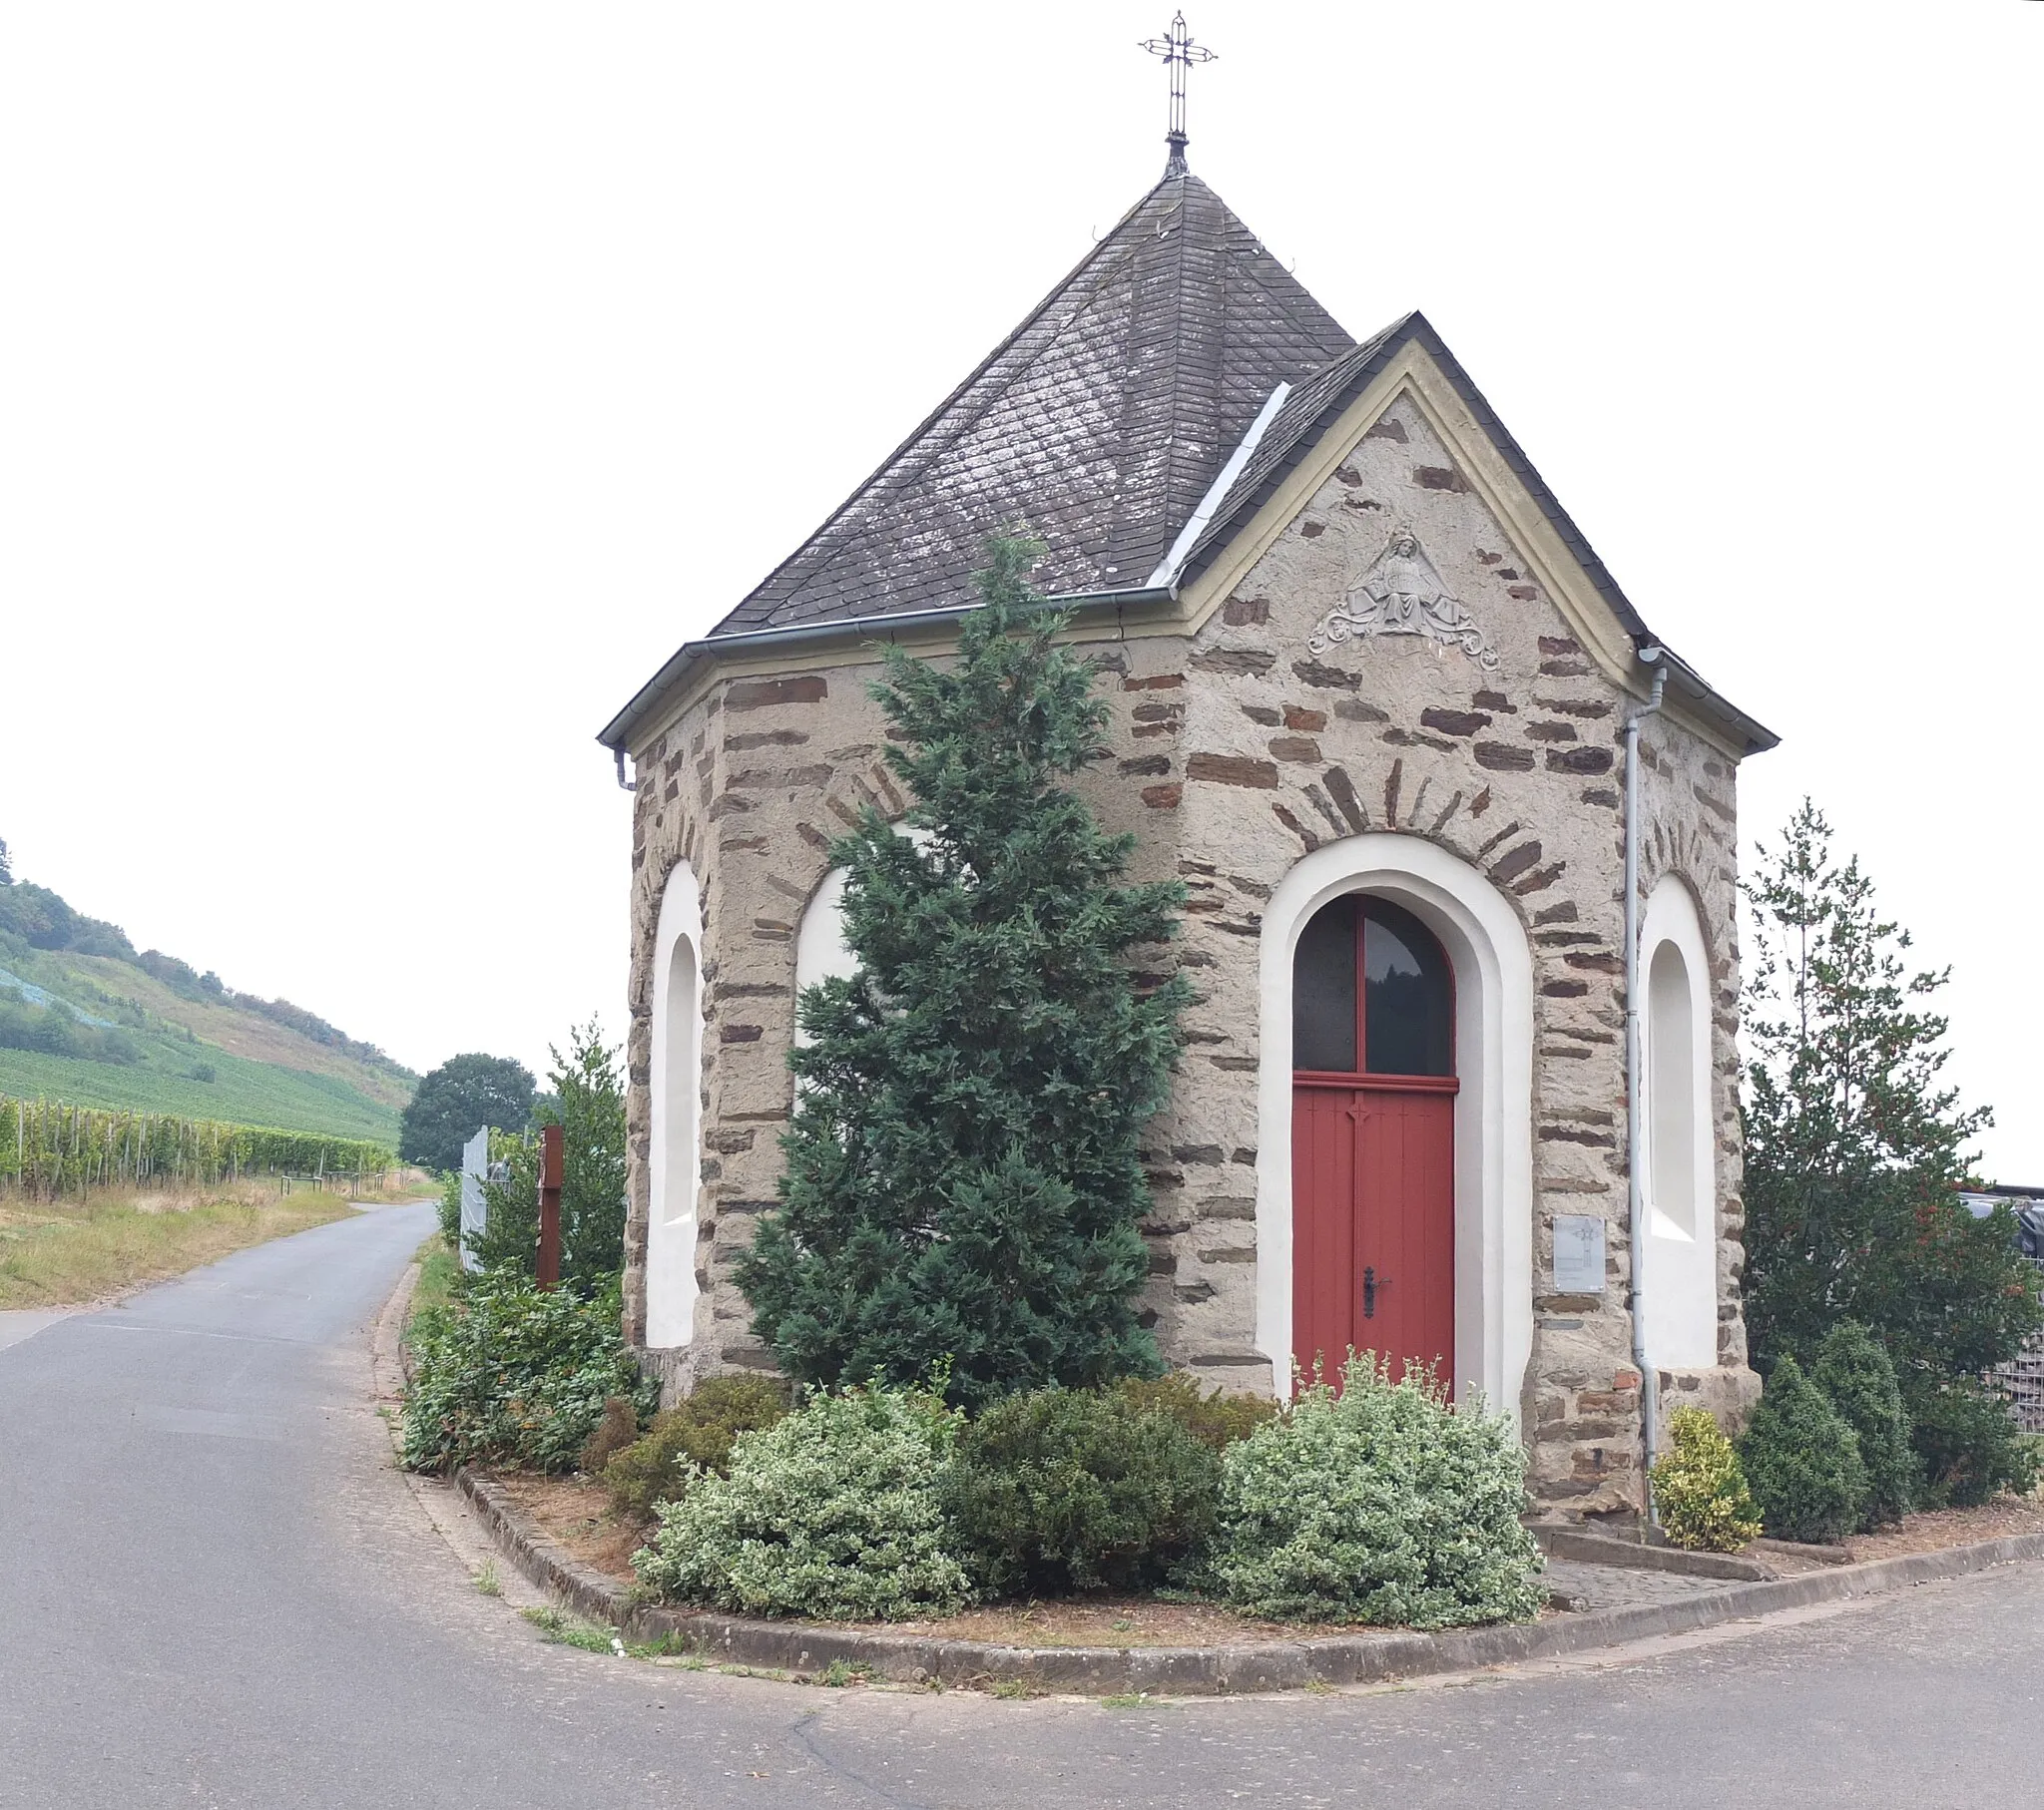 Photo showing: Chapel "Bracher Häuschen" in the vineyards above Ellenz-Poltersdorf